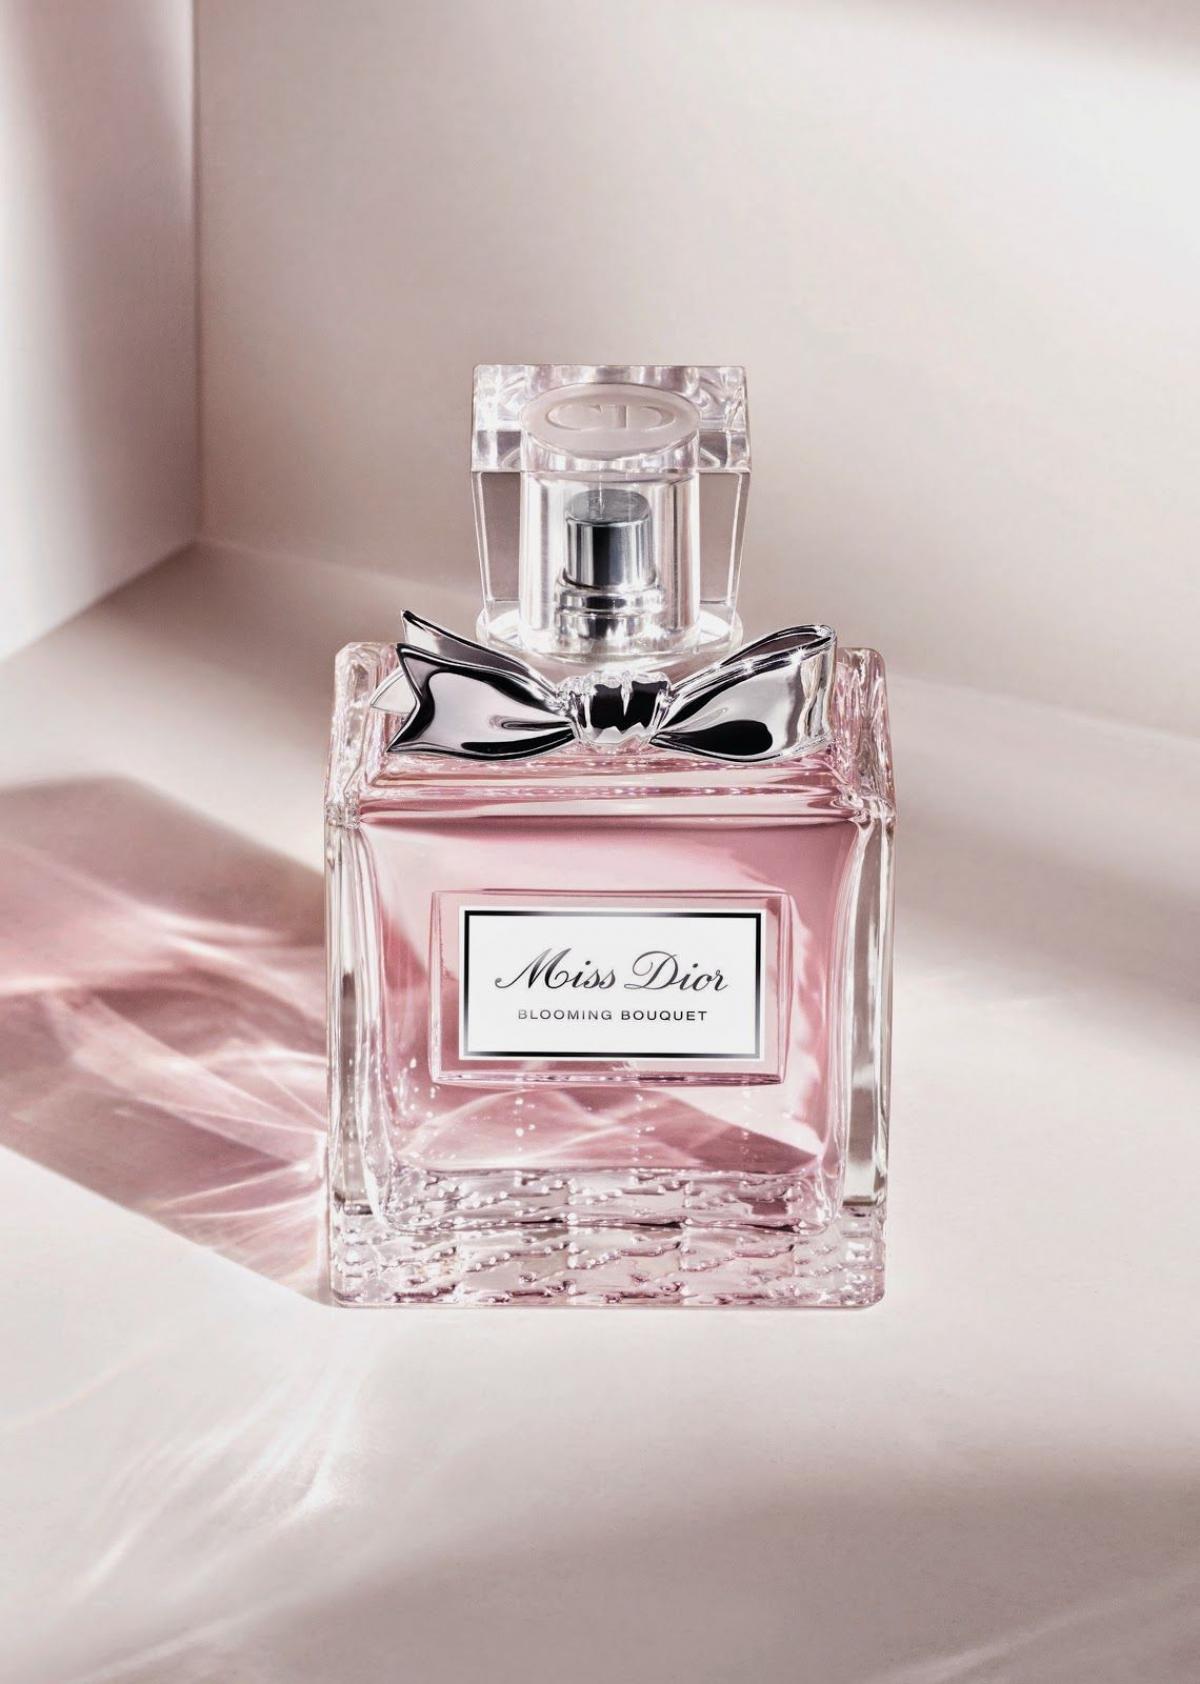 Miss Dior Blooming Bouquet Christian Dior perfume - a fragrância